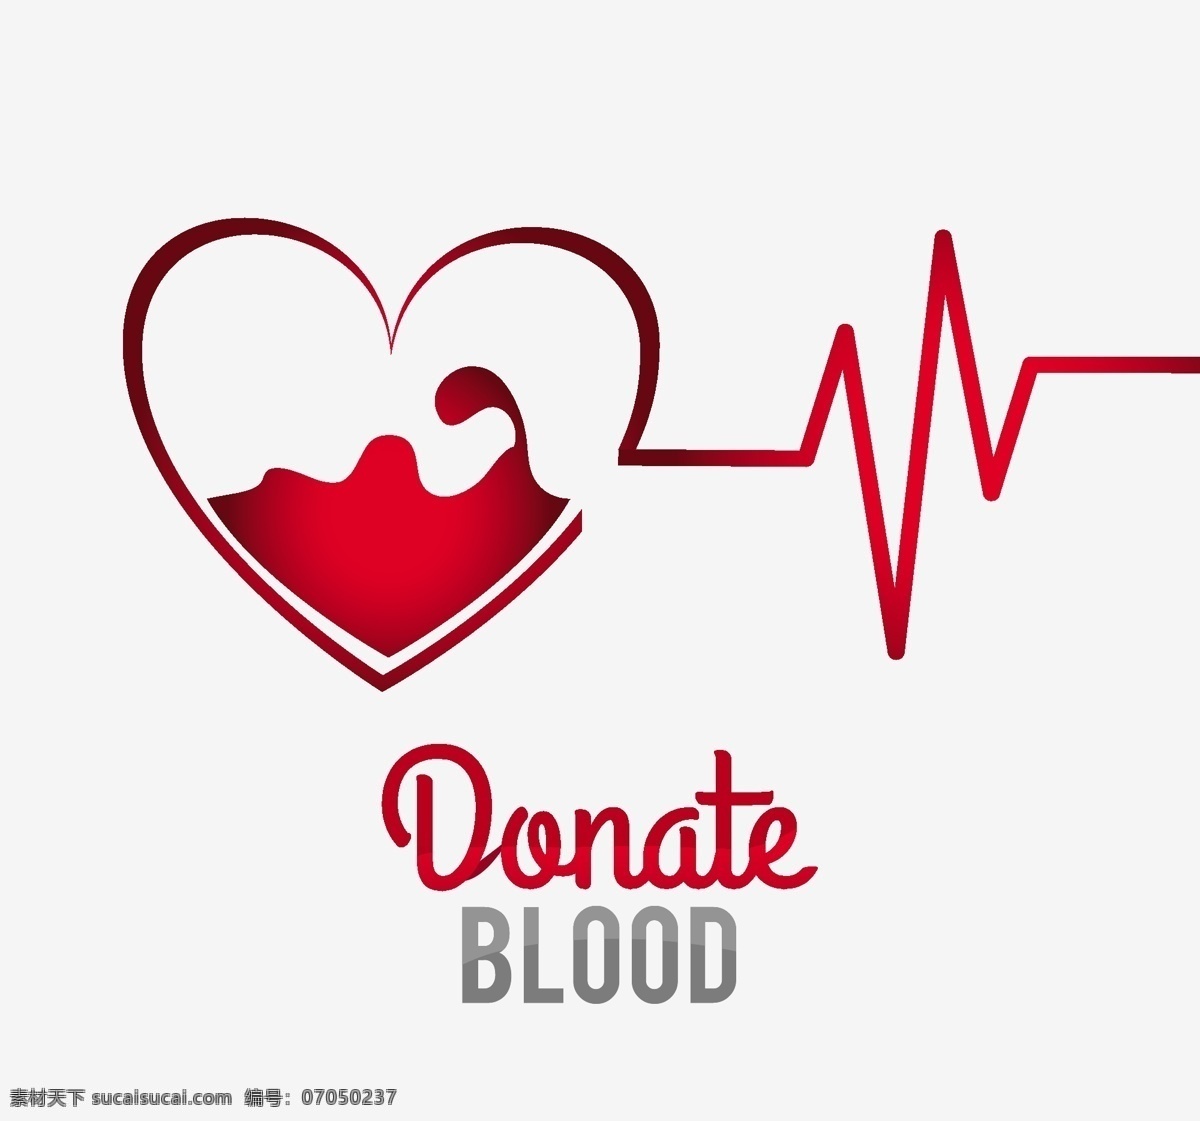 献血 广告 相关 矢量 创意 矢量素材 设计素材 背景素材